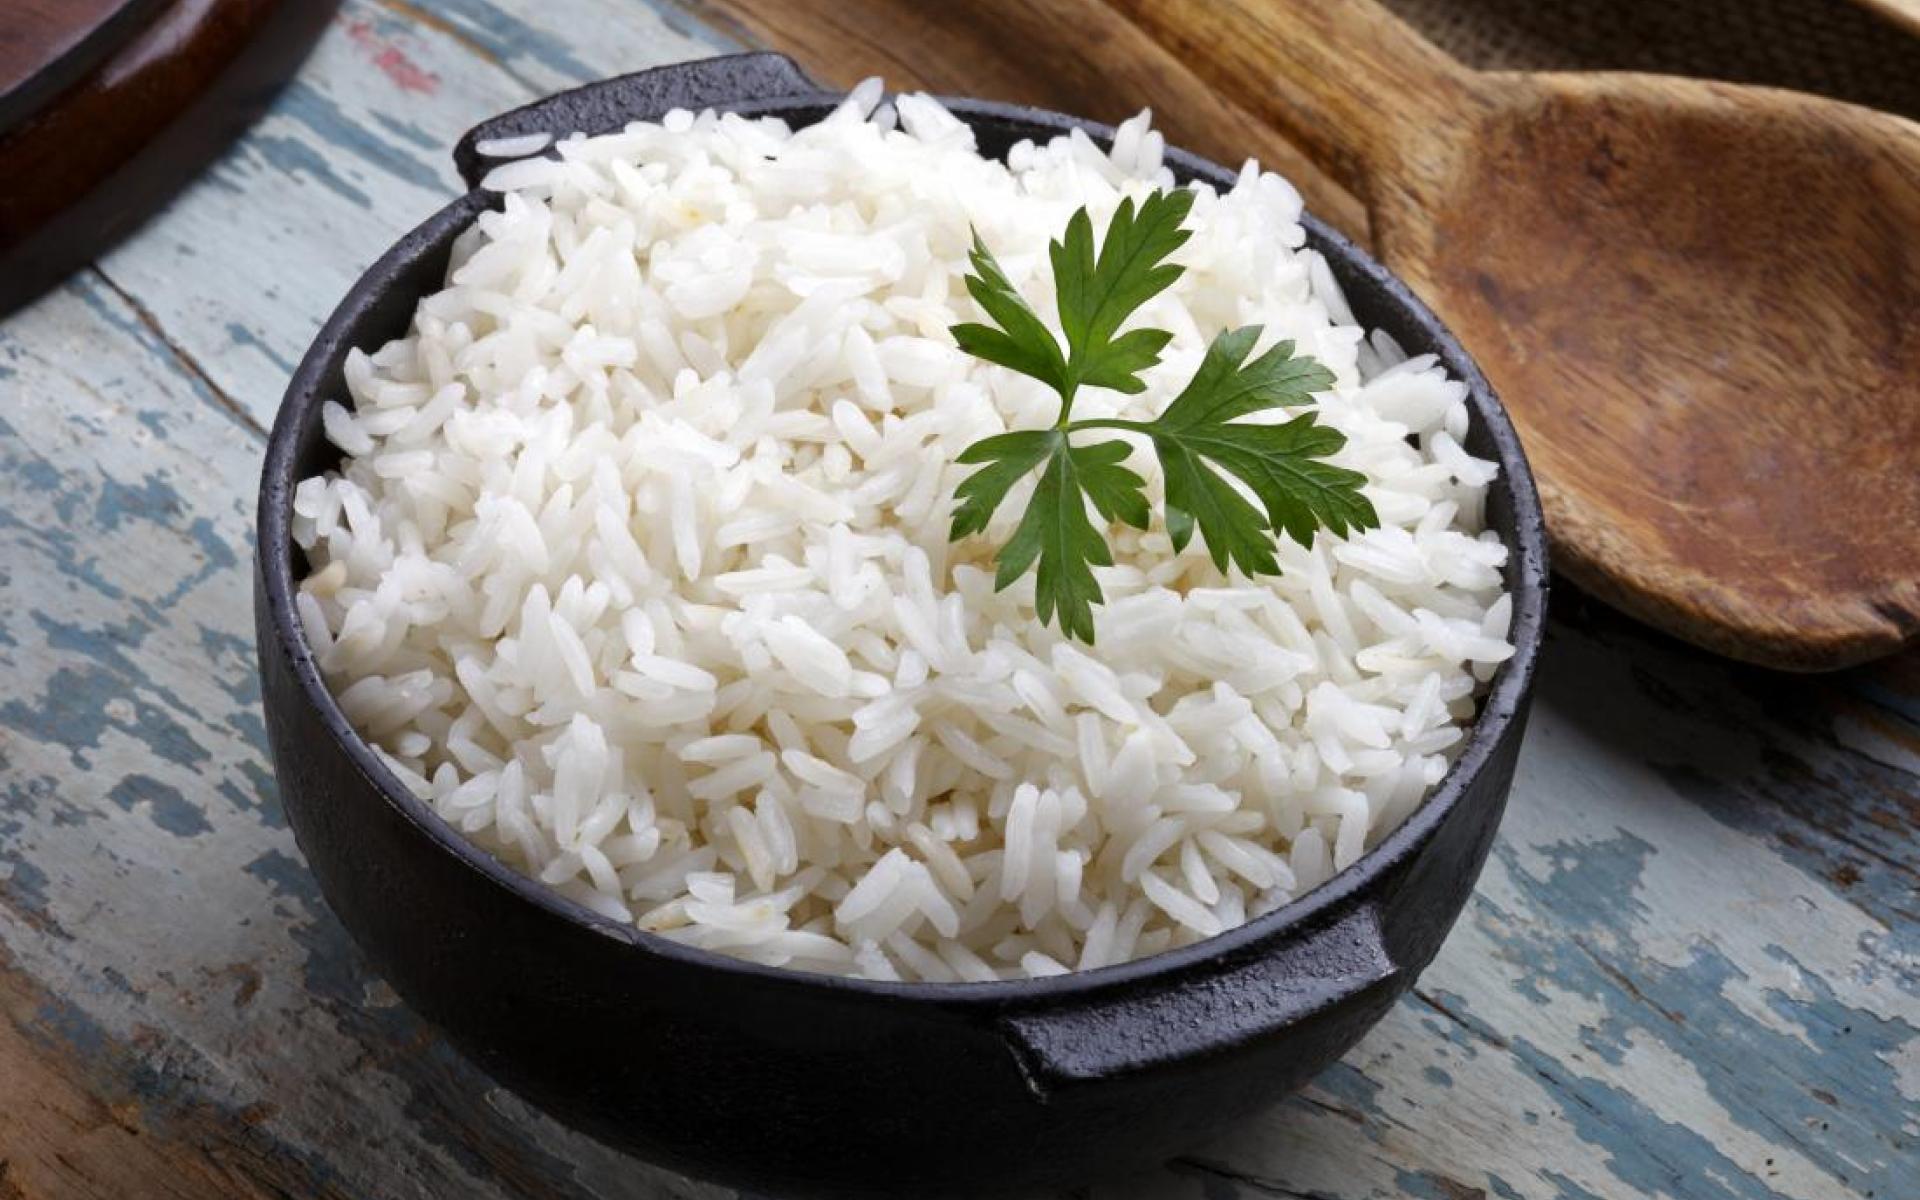  6 أطعمة تساعدك على النوم بسرعة  A-bowel-of-gluten-free-rice